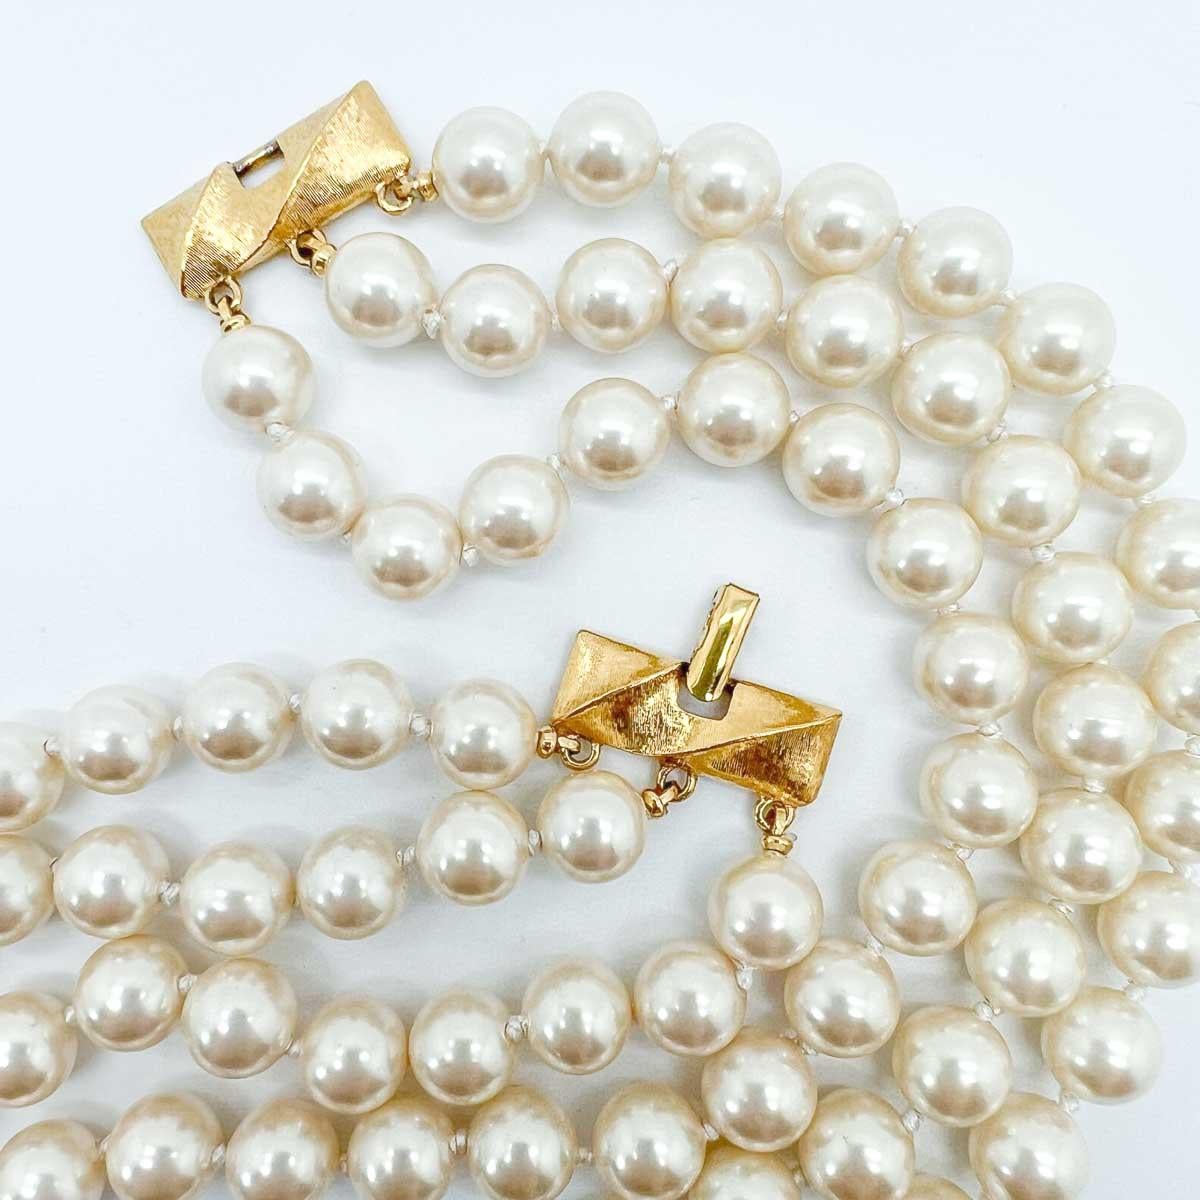 Un collier de perles Monet vintage. Le classique ultime pour votre boîte à bijoux et parfait pour la touche de style éternelle.
Créateurs à l'origine de somptueux monogrammes plaqués or pour les sacs à main des femmes au début du XXe siècle, Monet